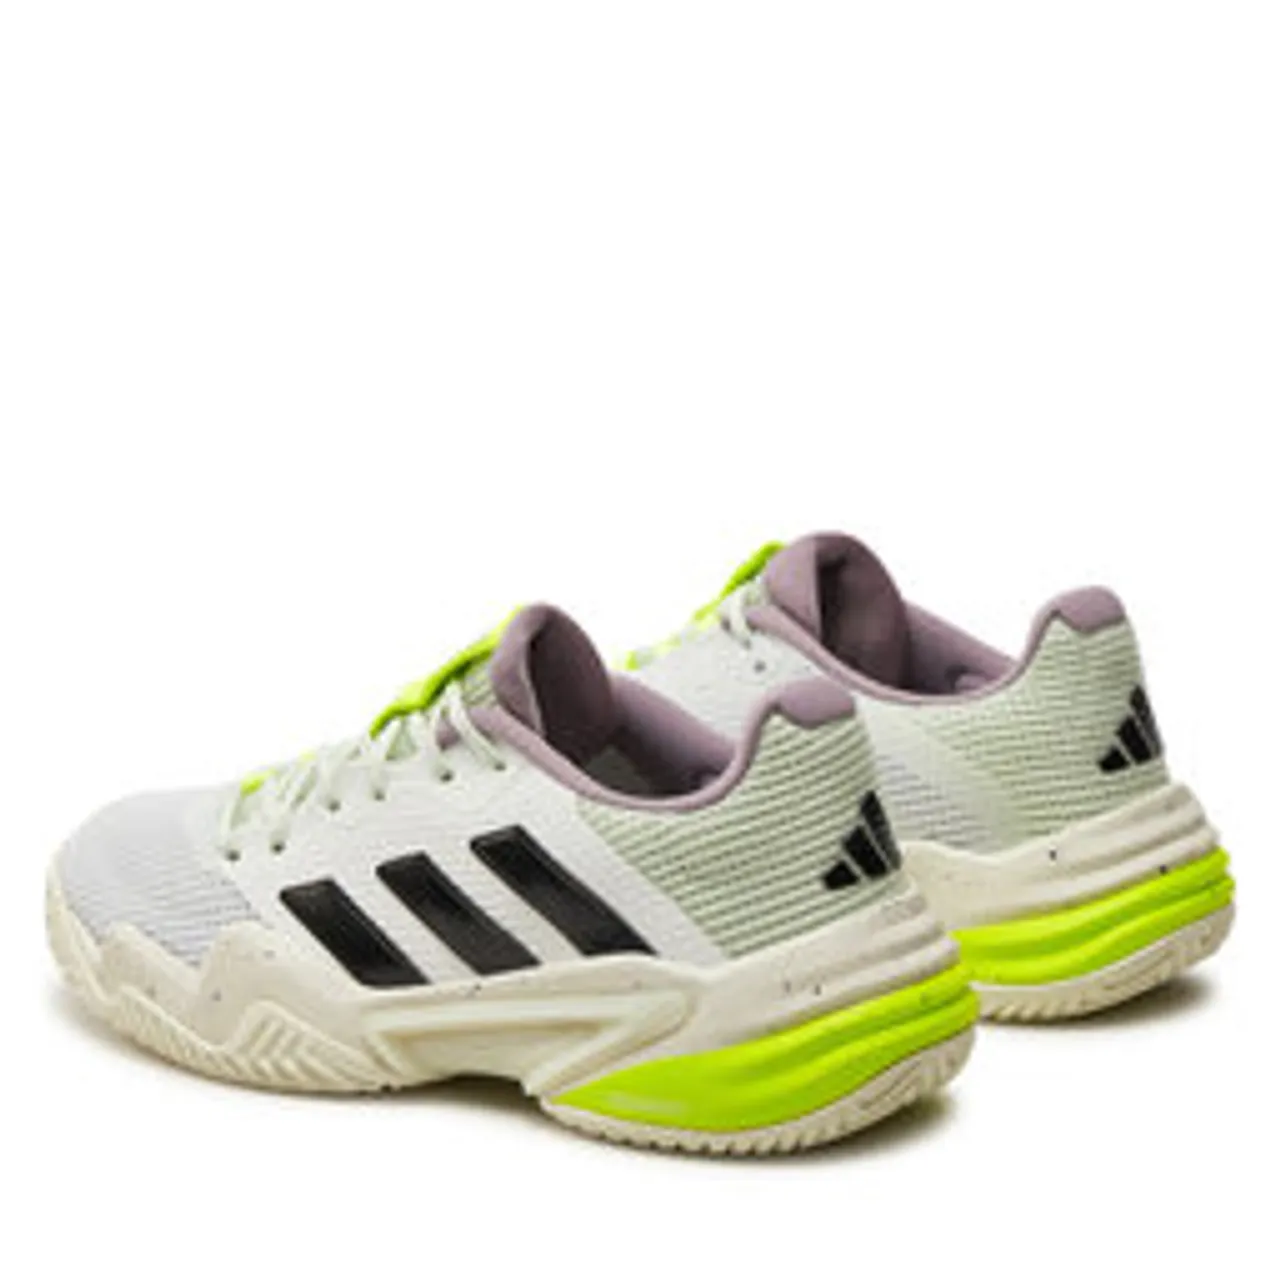 Schuhe adidas Barricade 13 Tennis IF0409 Ftwwht/Cblack/Cryjad